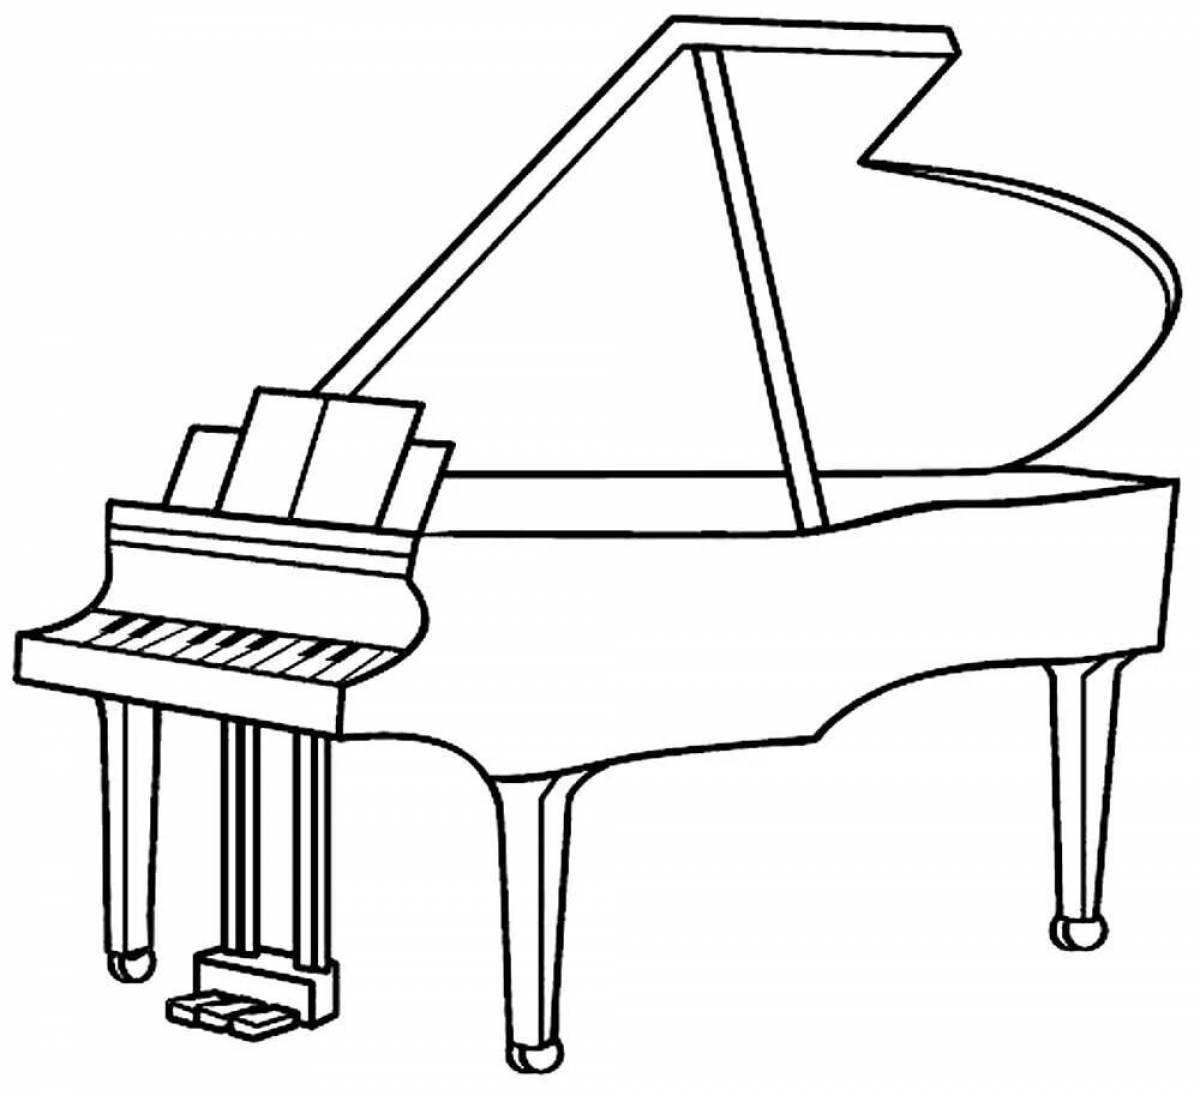 Children's piano #16